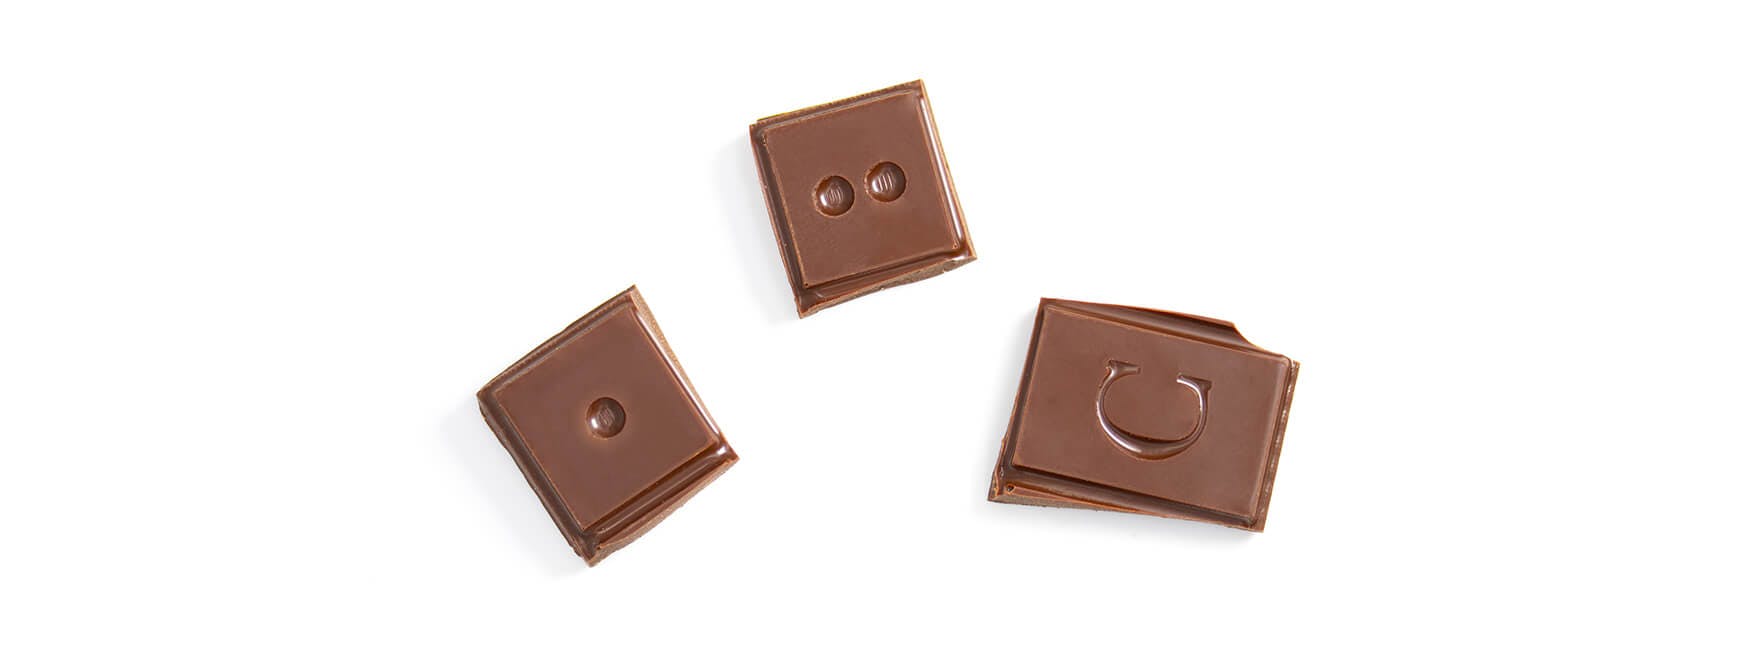 Schokoladentafel in drei Etappen